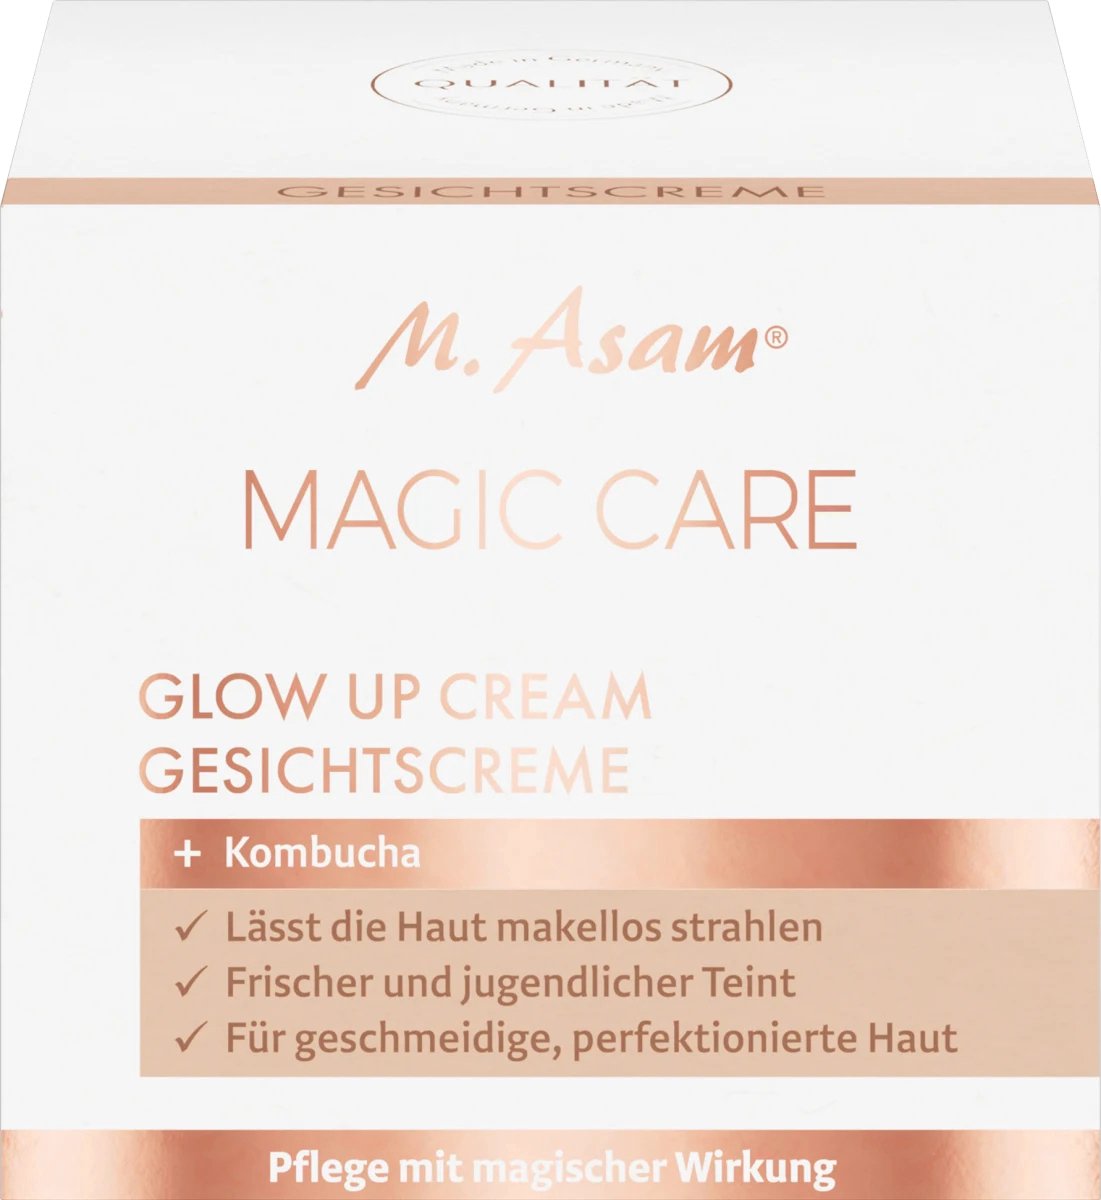 Gezichtscrème Magic Care Glow Up Cream, 50 ml Face Cream